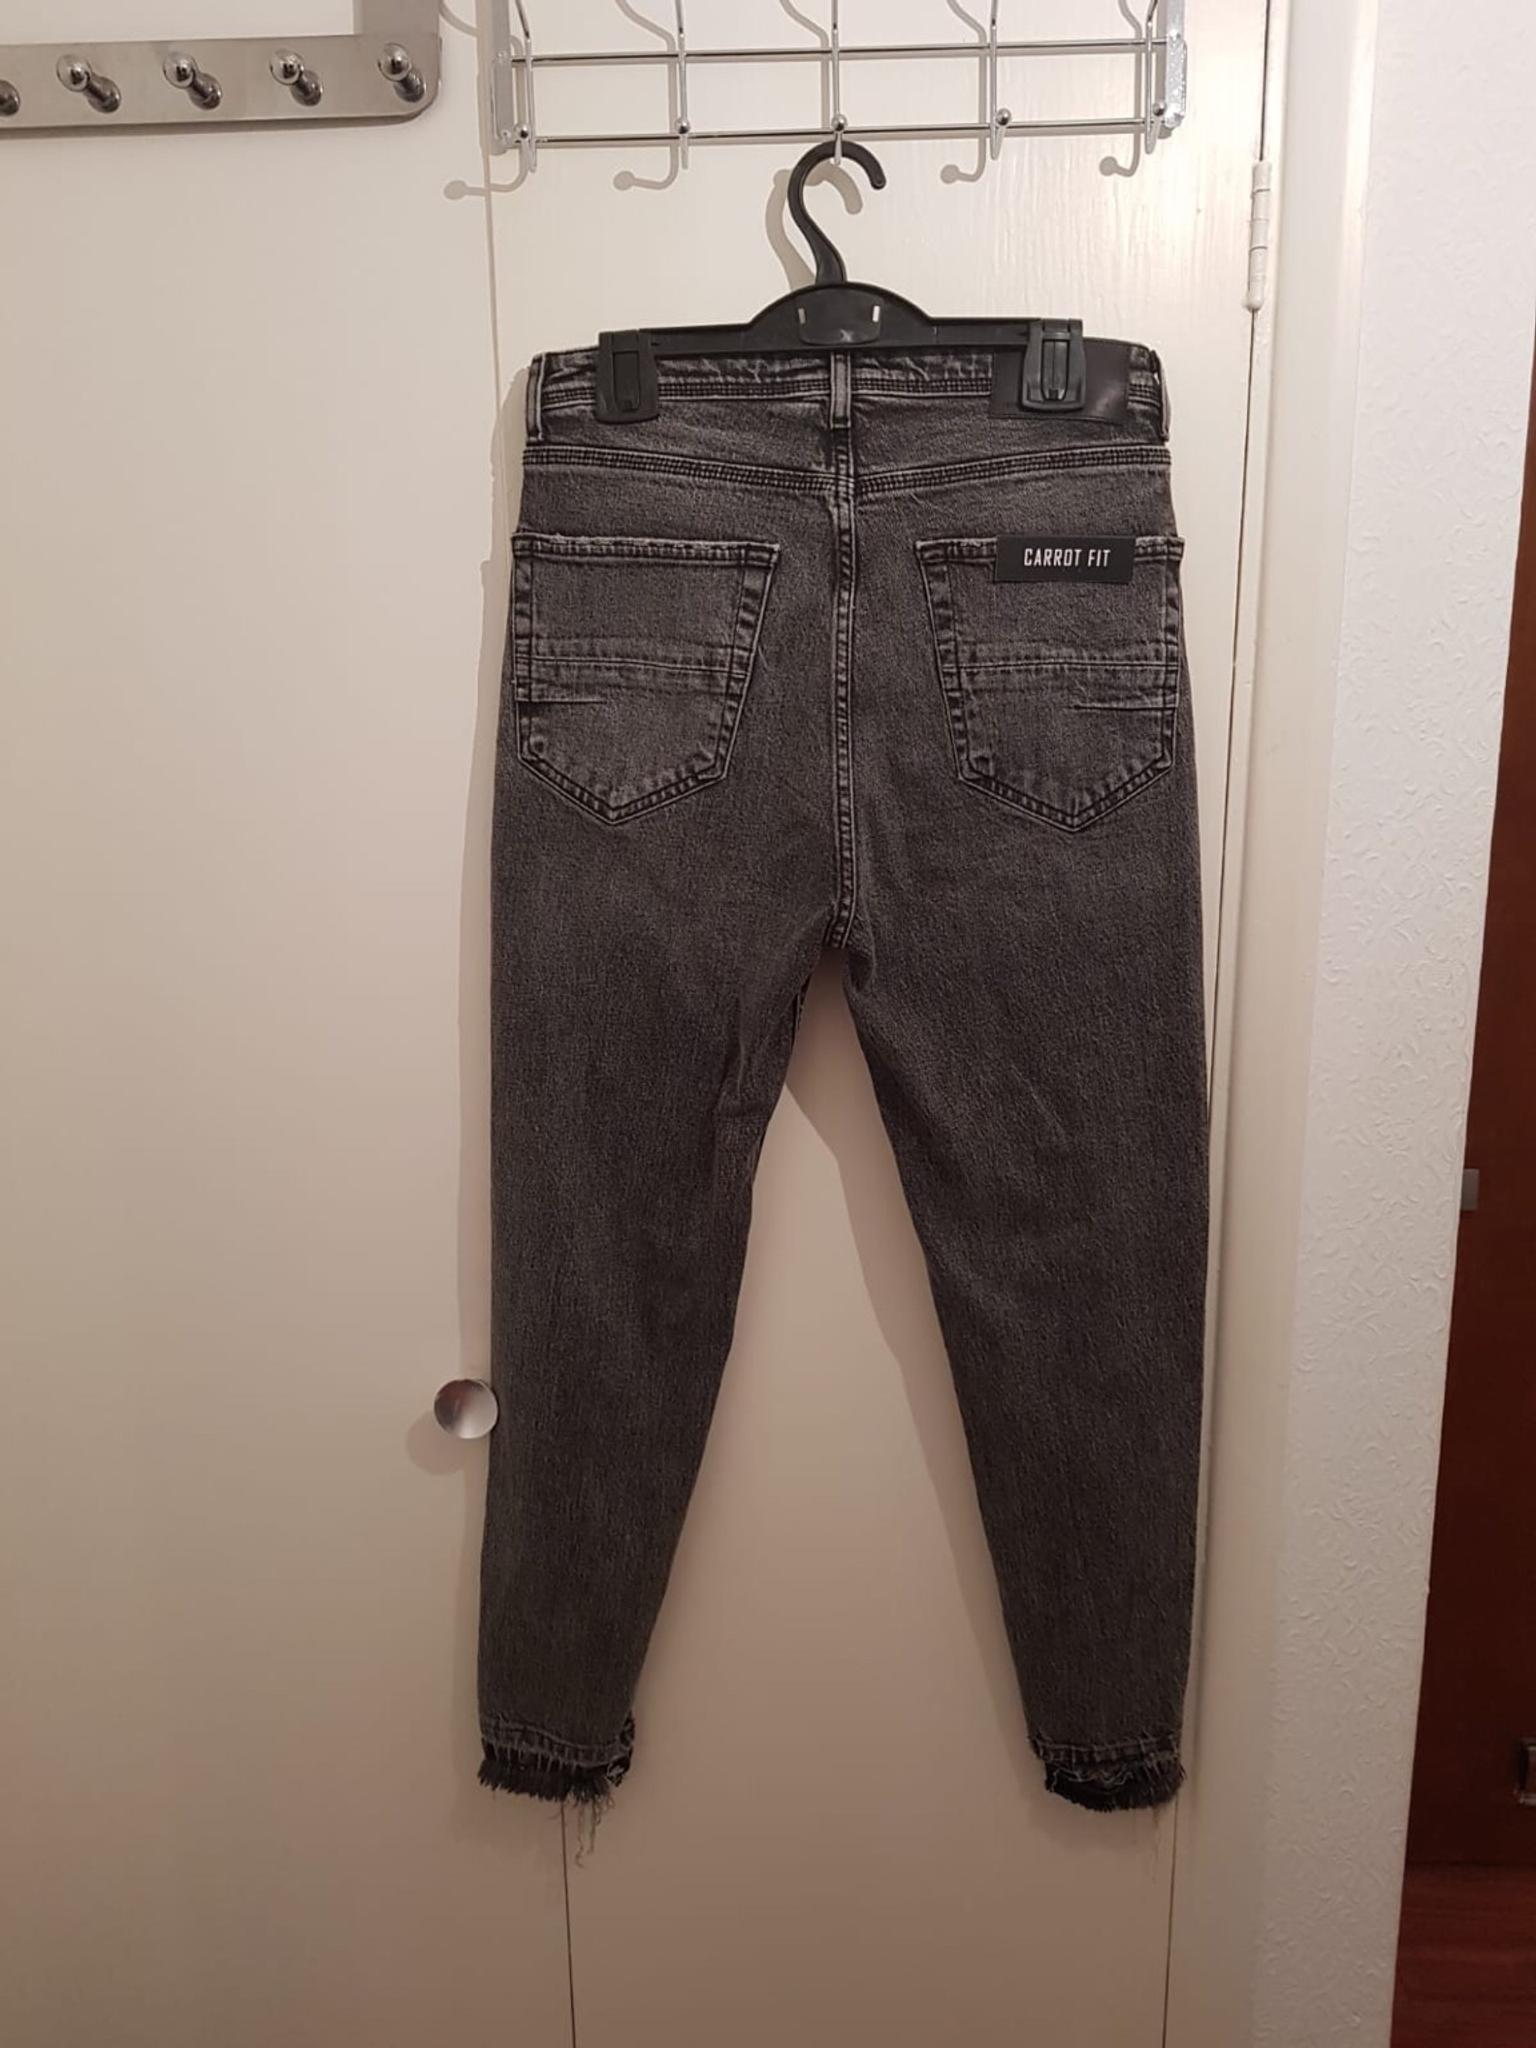 ZARA men's skinny jeans grey NEW 31R in 